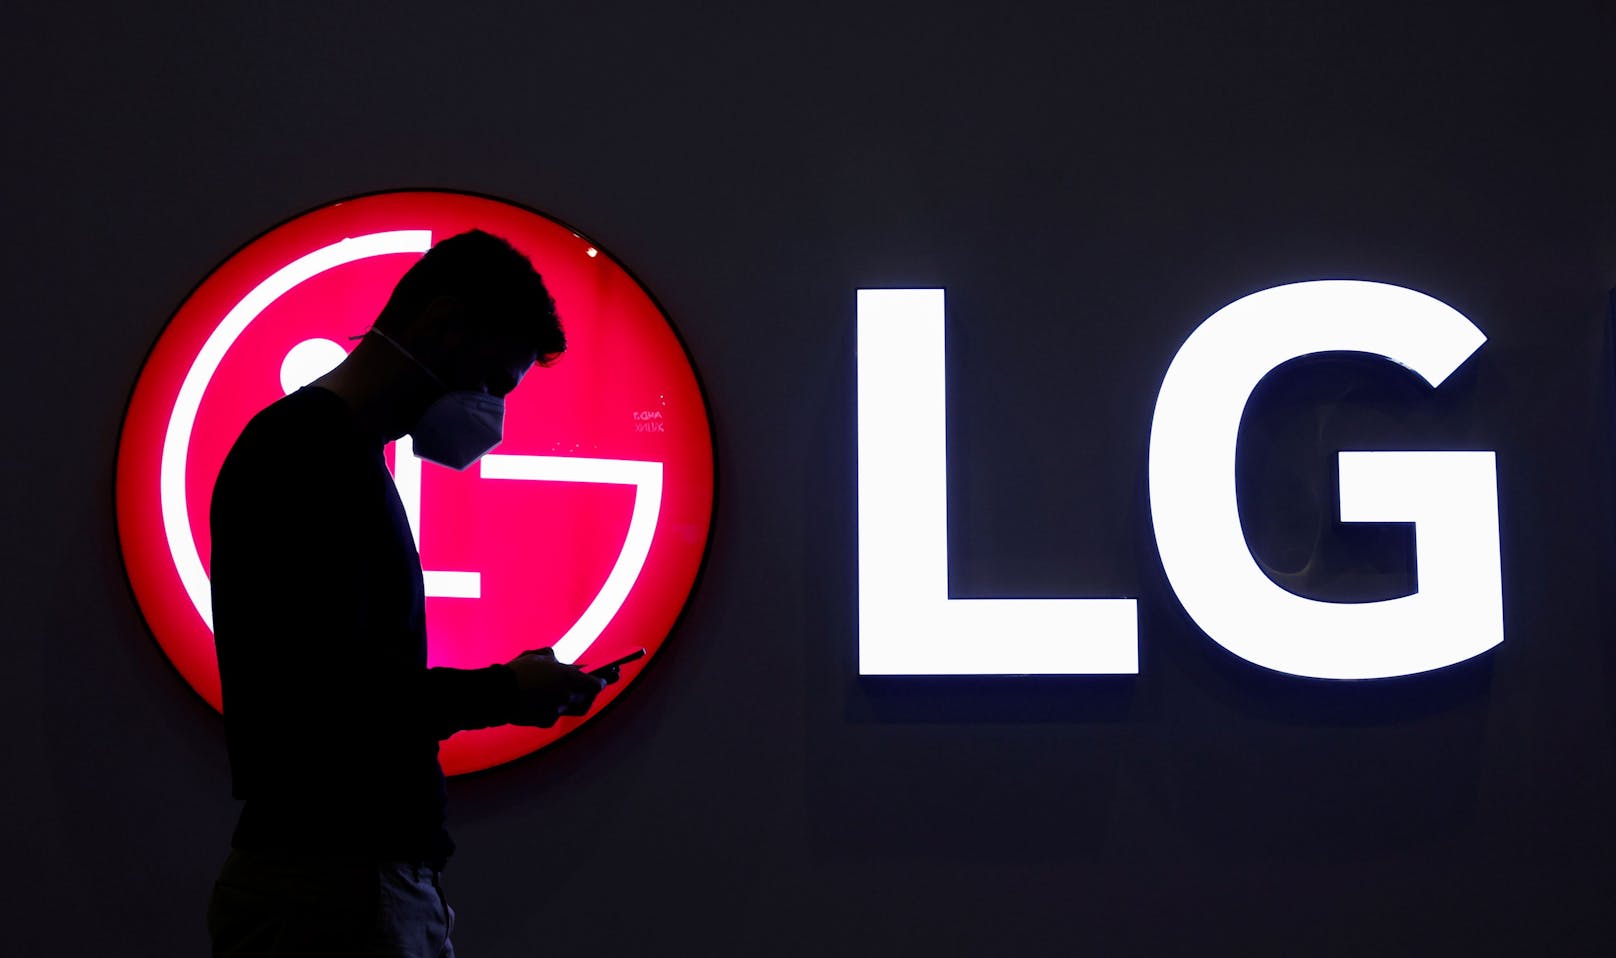 LG plant eine Umstellung auf zukunftsfähige Geschäftsstruktur in Planung, Wachstum und Kundenorientierung im Fokus.